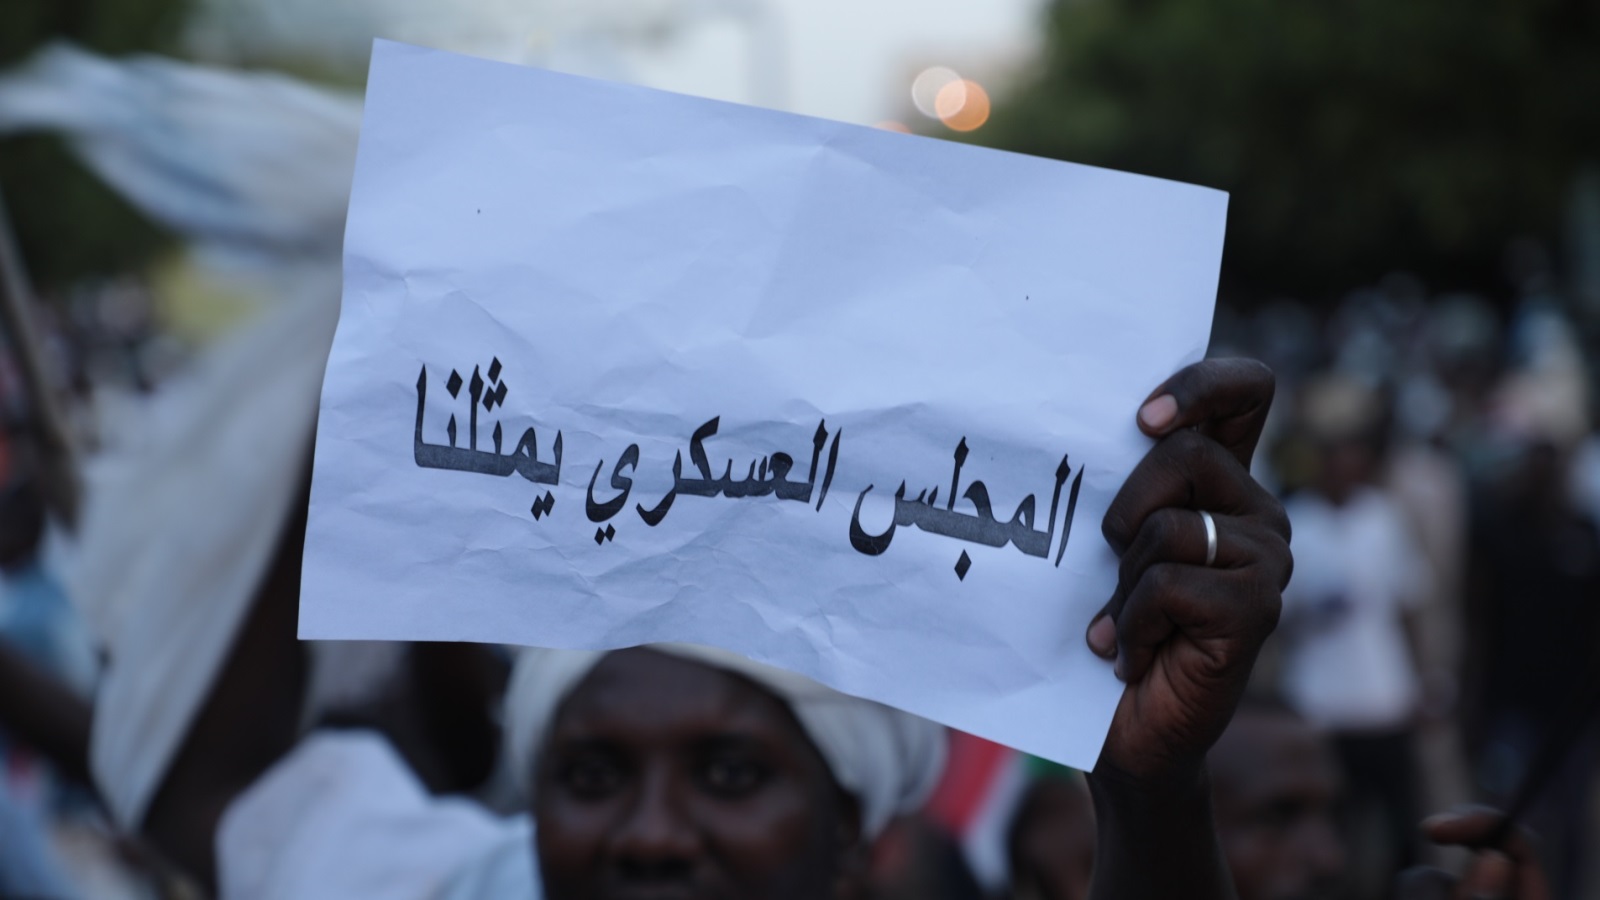 ‪‬ لوموند: ظهور هؤلاء المتظاهرين الجدد المفاجئ بشوارع الخرطوم أكبر دليل على أن العملية الديمقراطية في خطر(الأناضول)